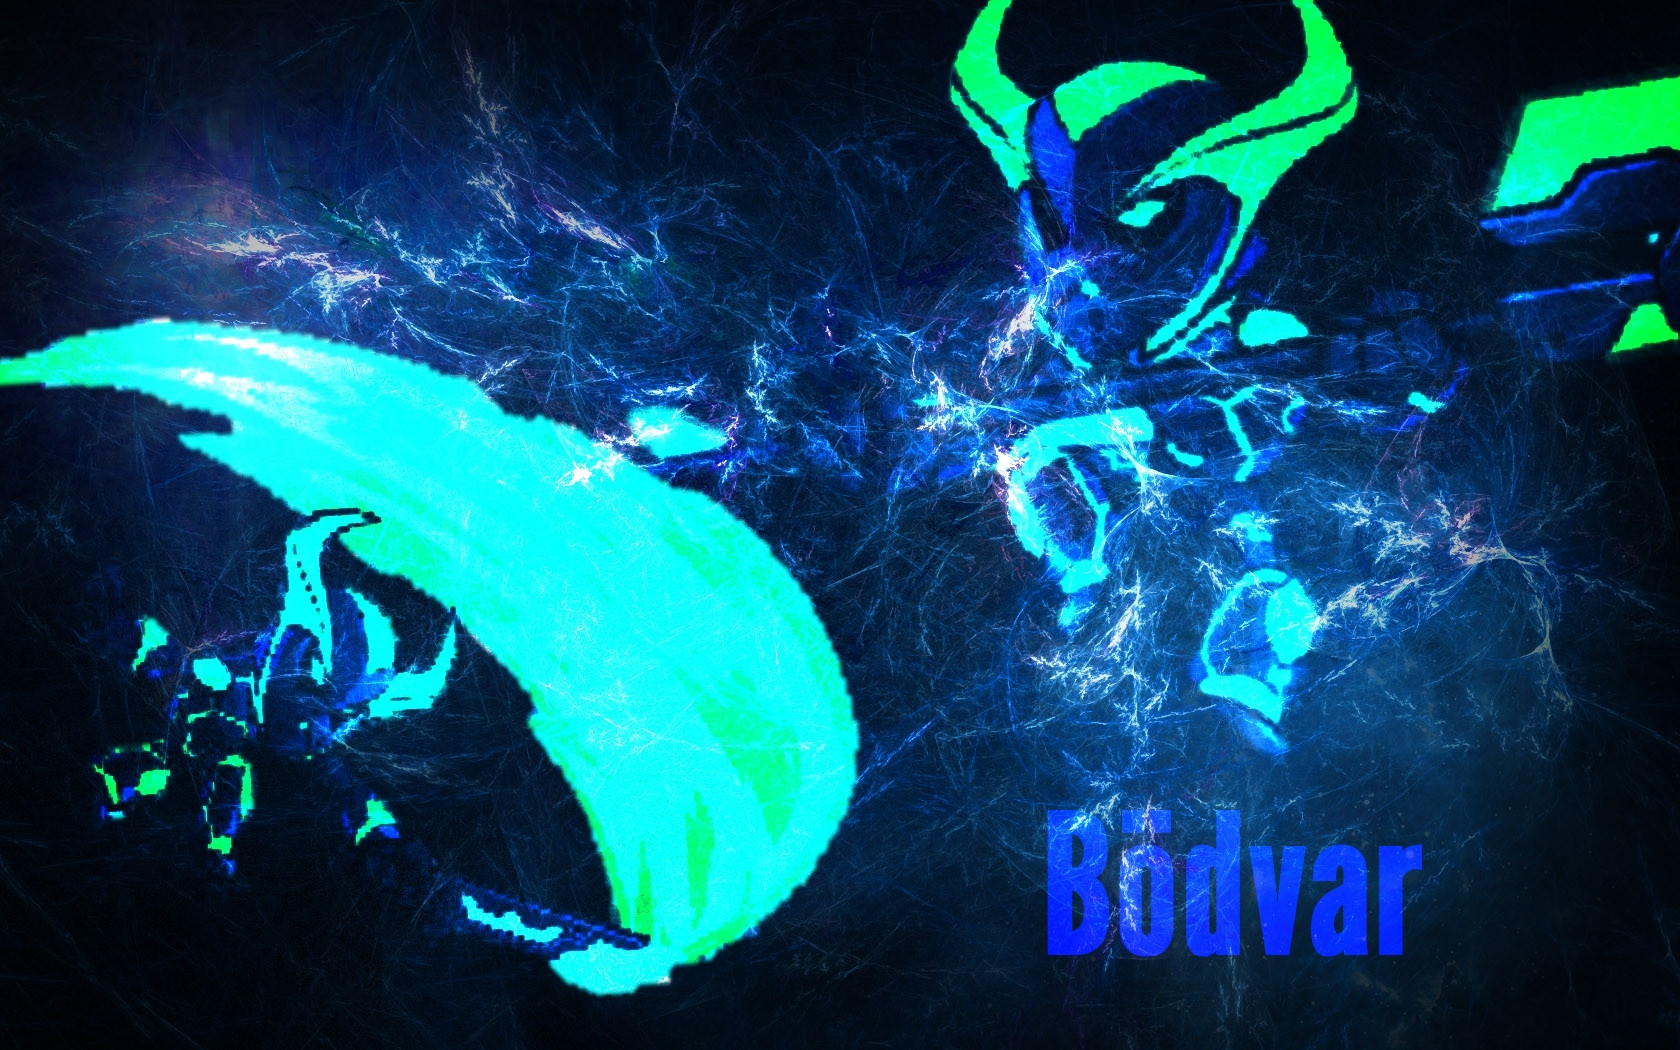 Cyber Bodvar Is Dank [wallpaper] - Blue Lightning Wallpaper Hd , HD Wallpaper & Backgrounds